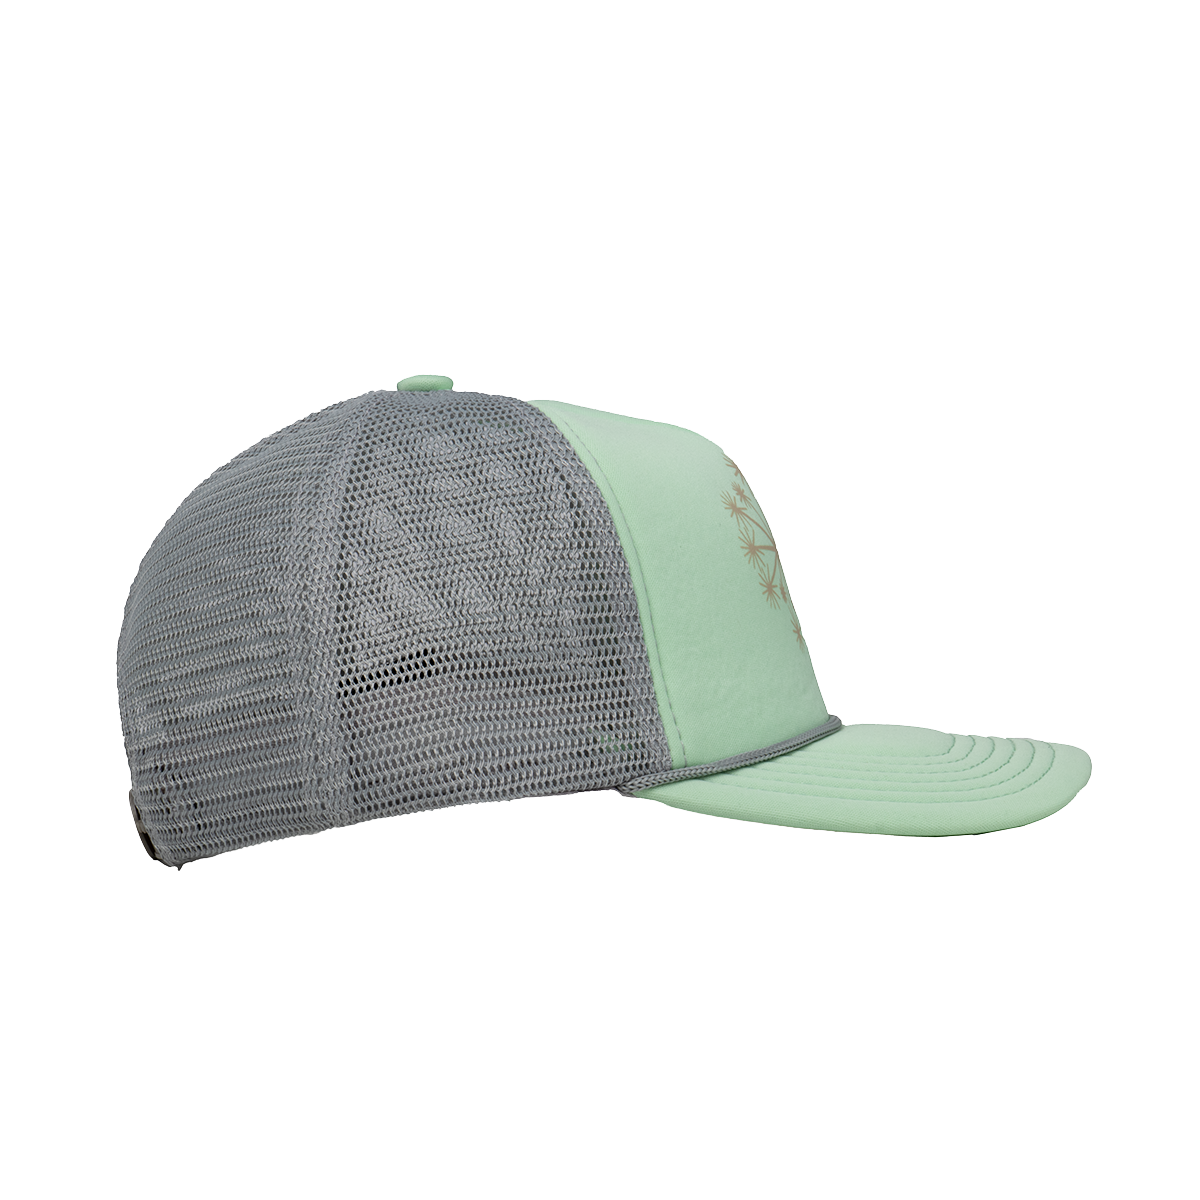 Dandelion Foam Trucker Hat - Mint/Light Gray Hat Touchstone   